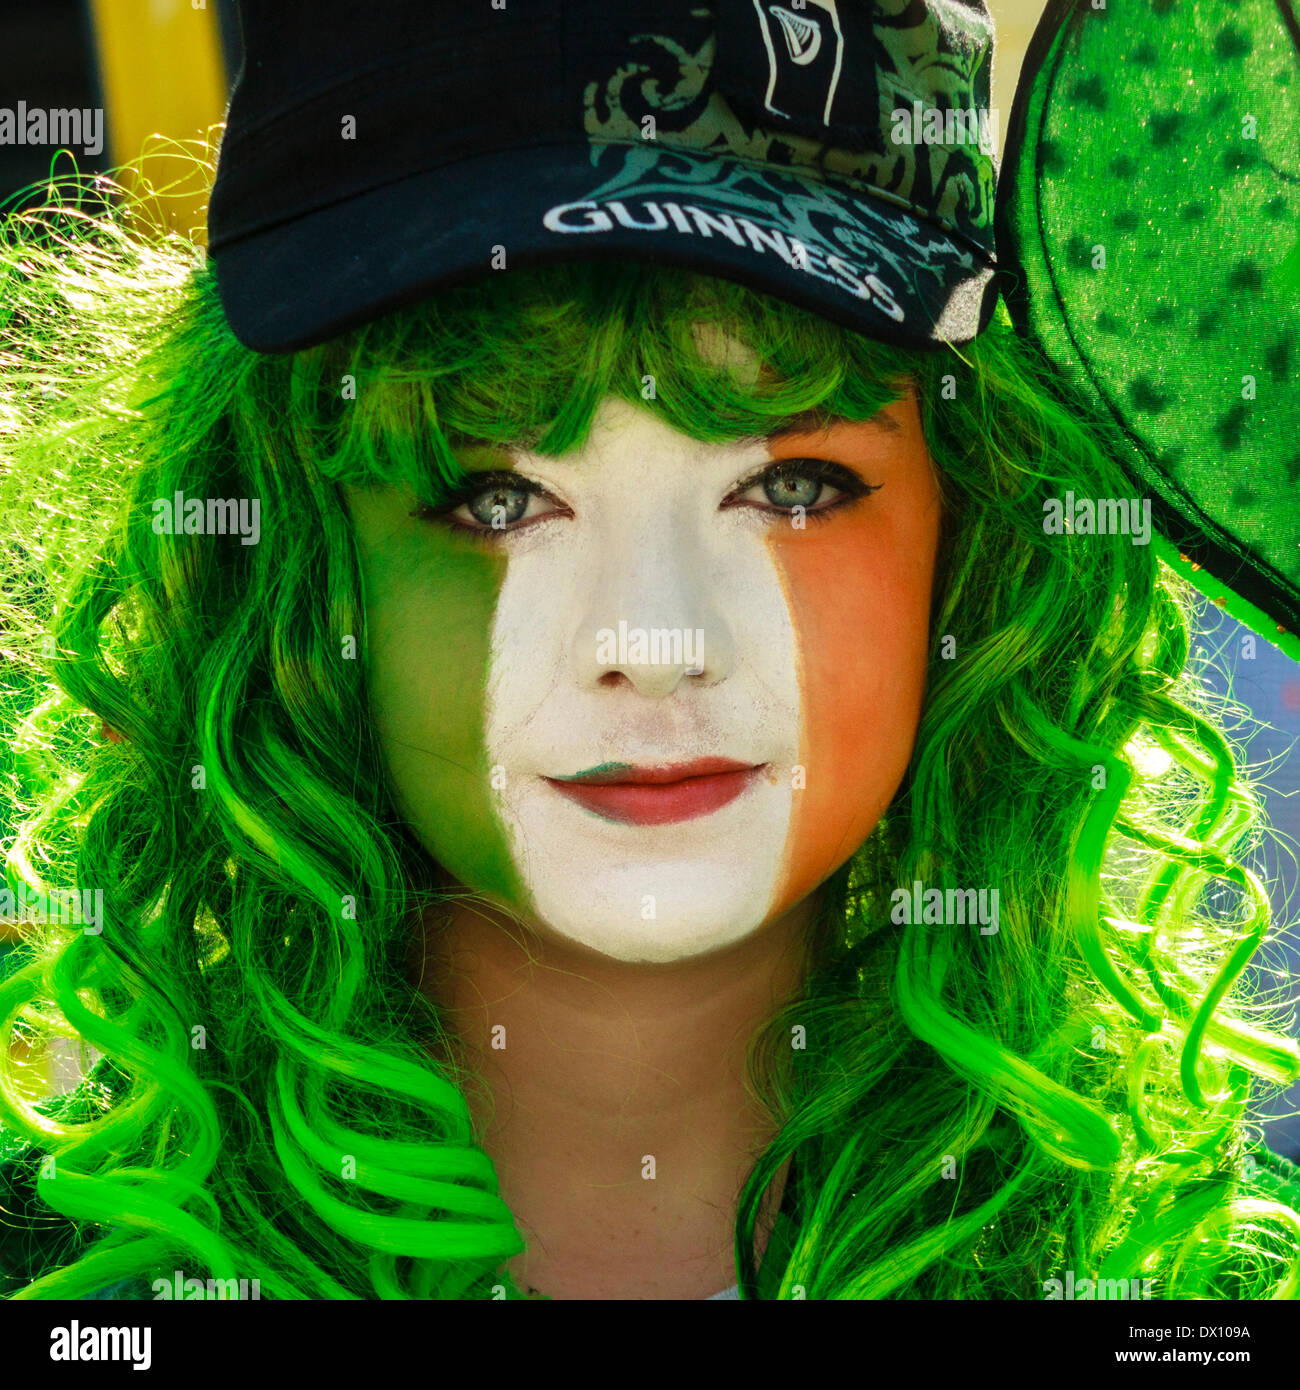 Junge Frau mit ihrem Gesicht in den Farben der irischen Flagge während der Feierlichkeiten zum St. Patrick's Day. Stockfoto